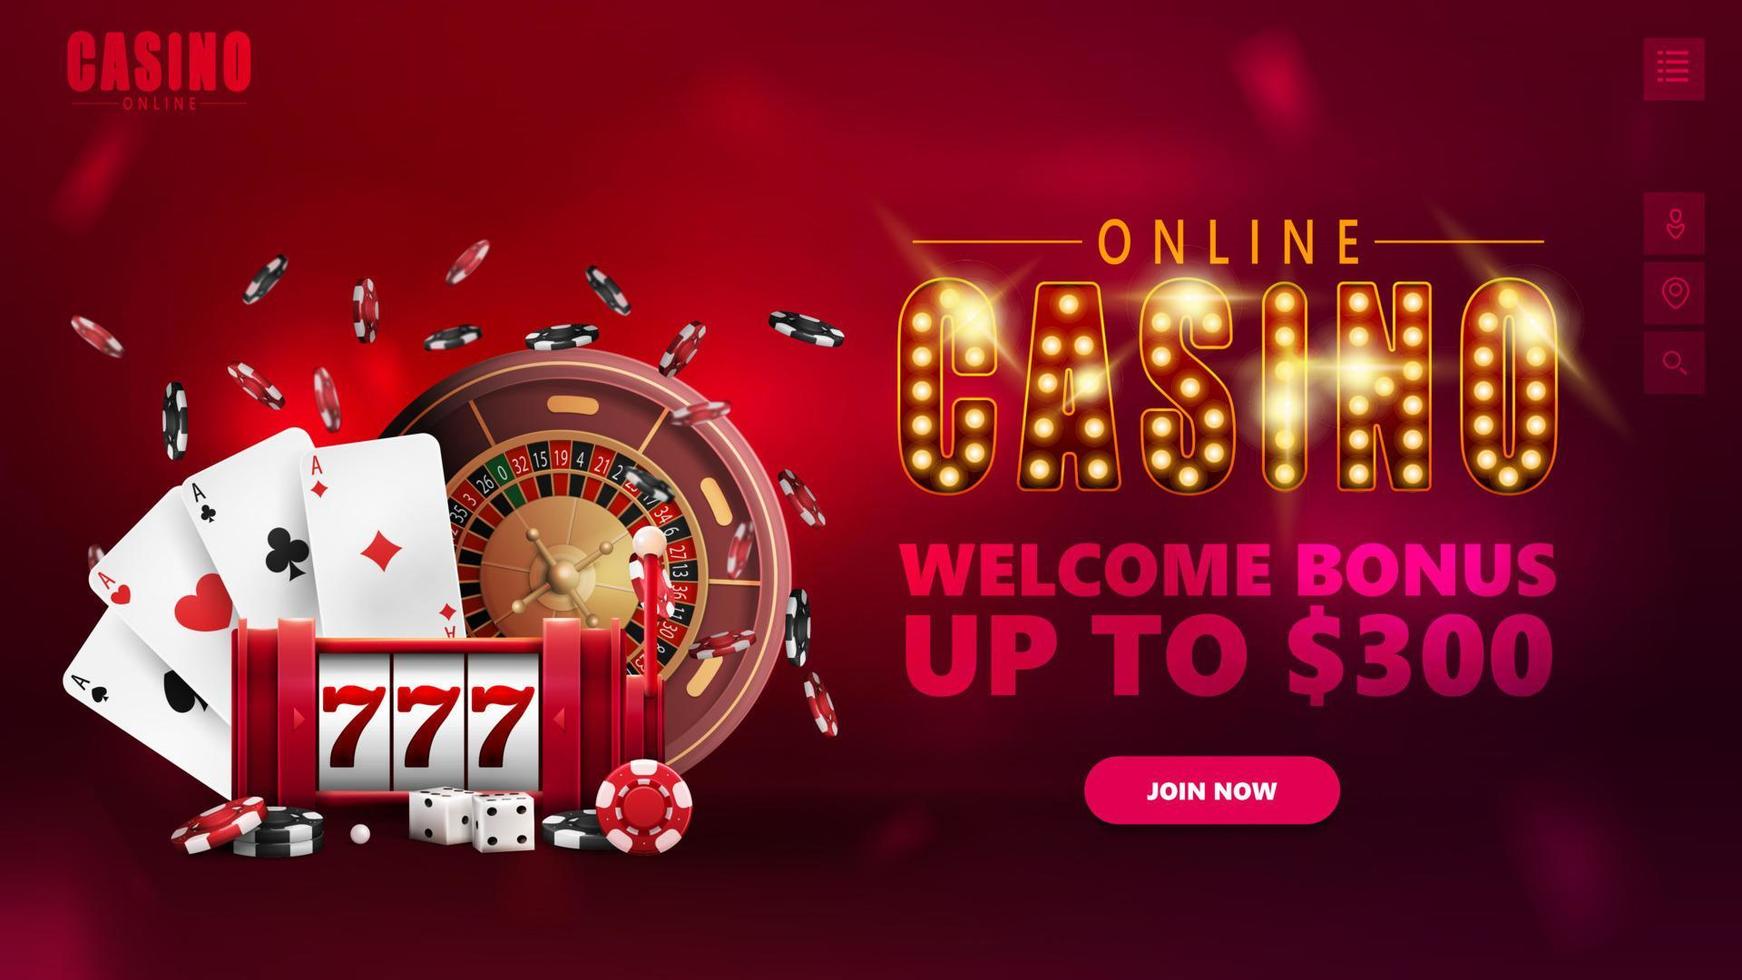 casino online, banner para site com elementos de interface, símbolo com lâmpadas de ouro, caça-níqueis, roleta de cassino, fichas de pôquer e cartas de jogar. vetor